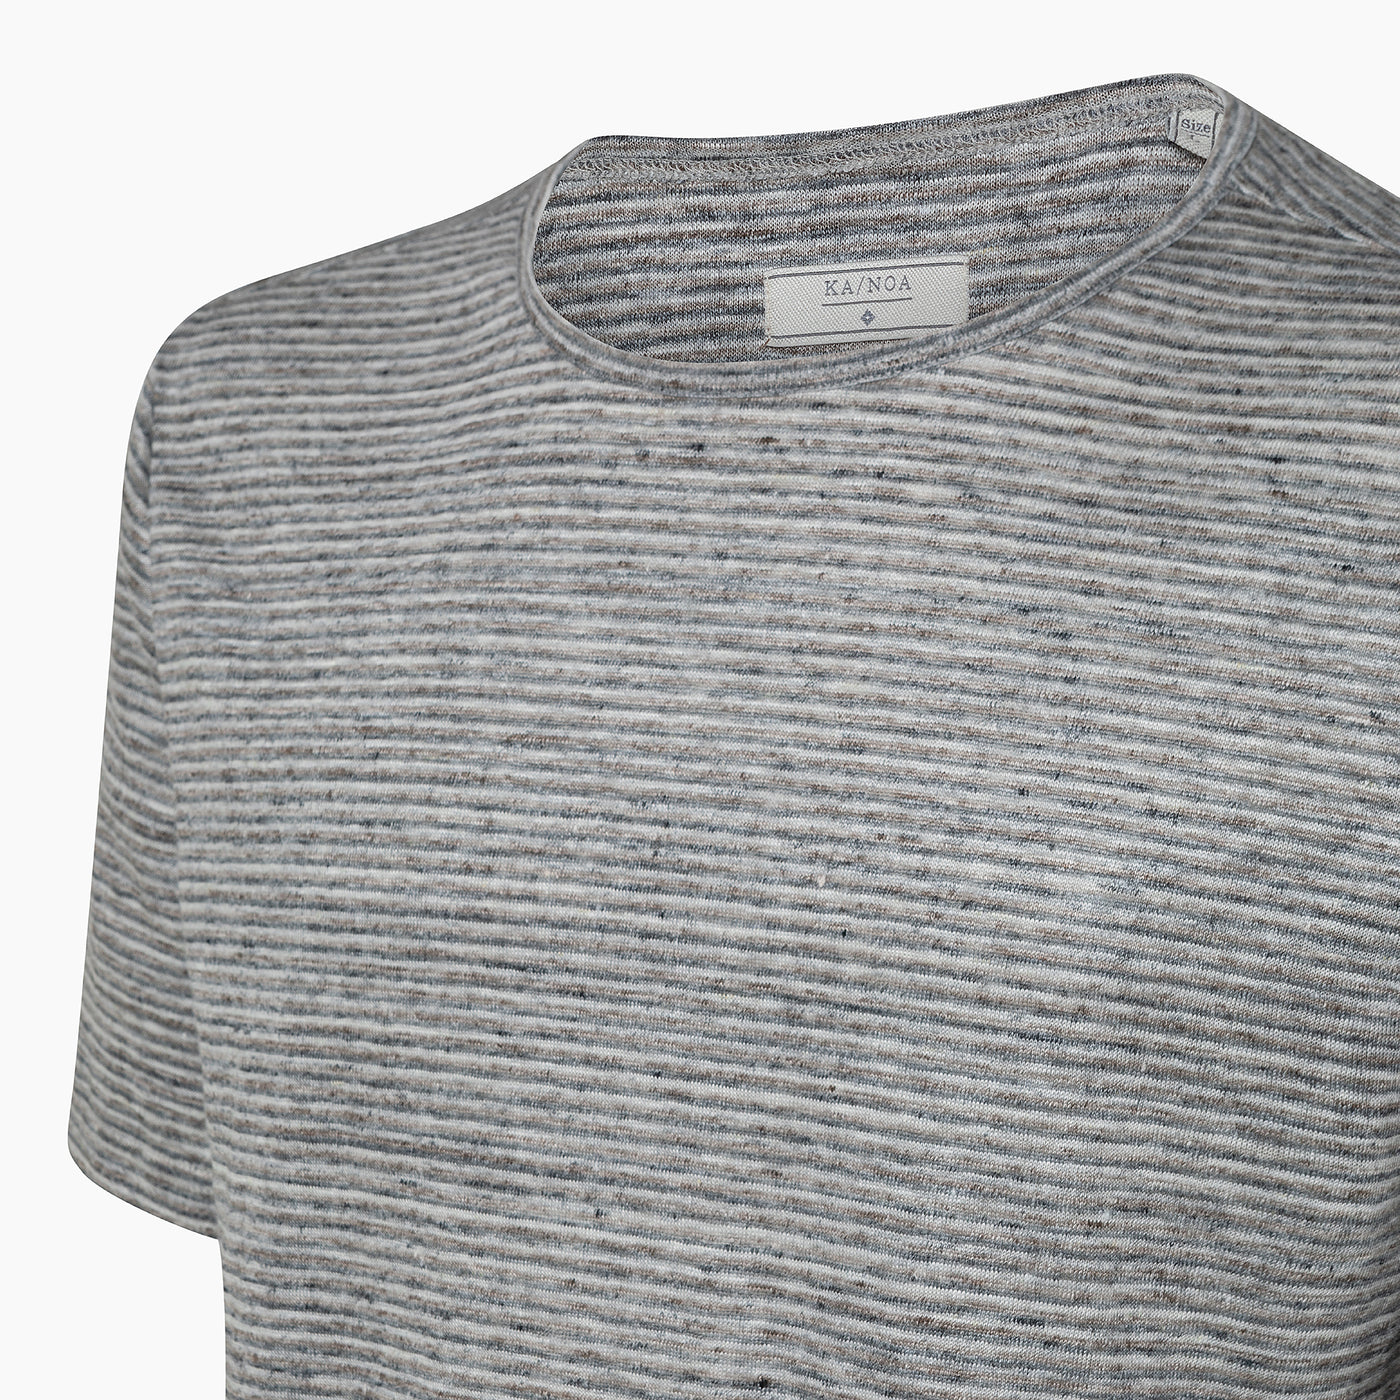 Smile stripe pattern short-sleeved t-shirt in linen